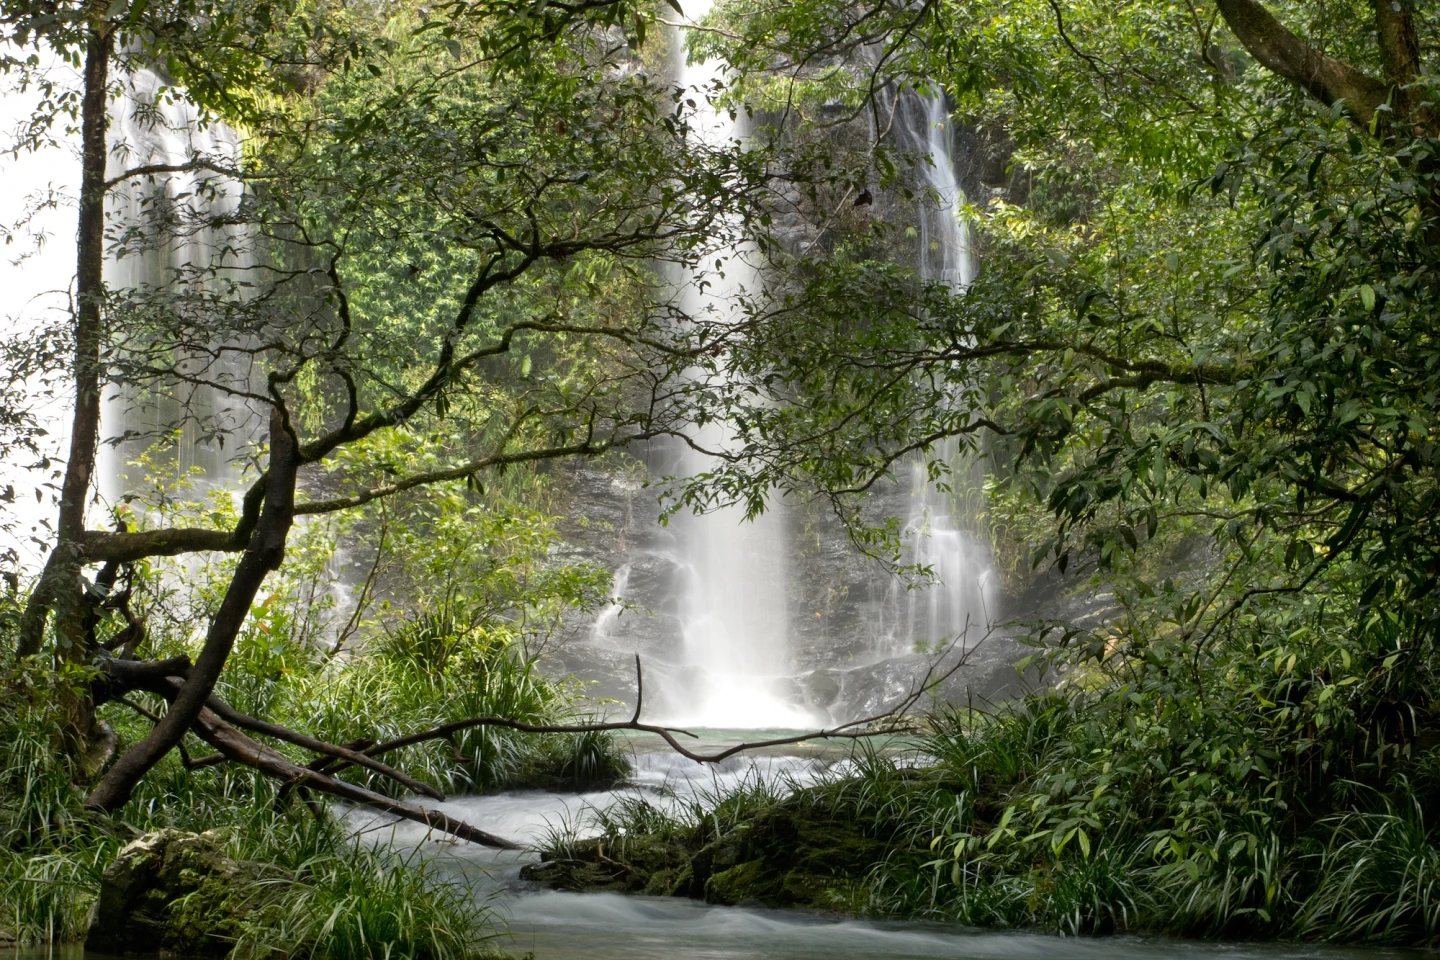 10 khu rừng cổ đại tuyệt đẹp còn tồn tại trên thế giới